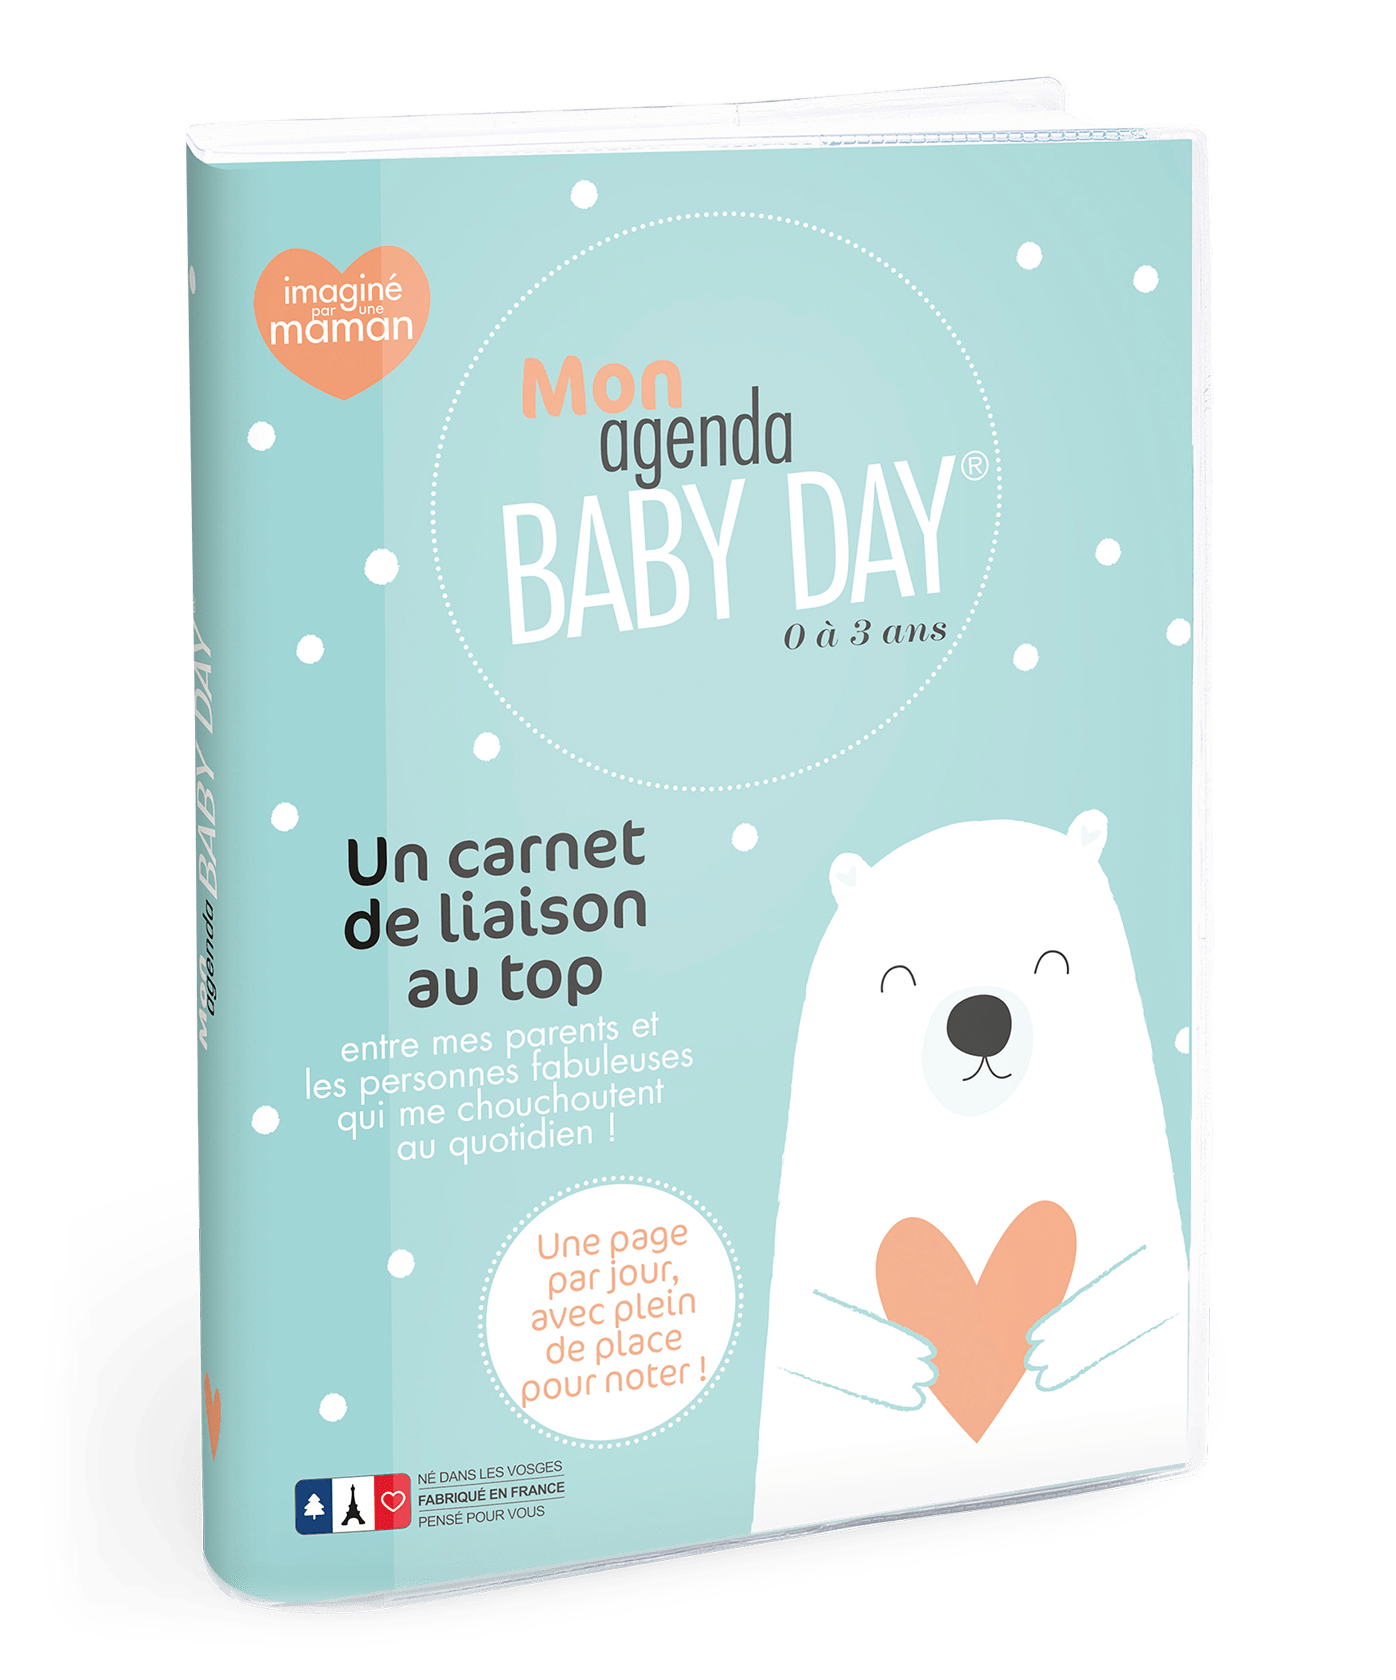 Mon agenda Baby Day®  Un carnet de liaison et de vie entre les